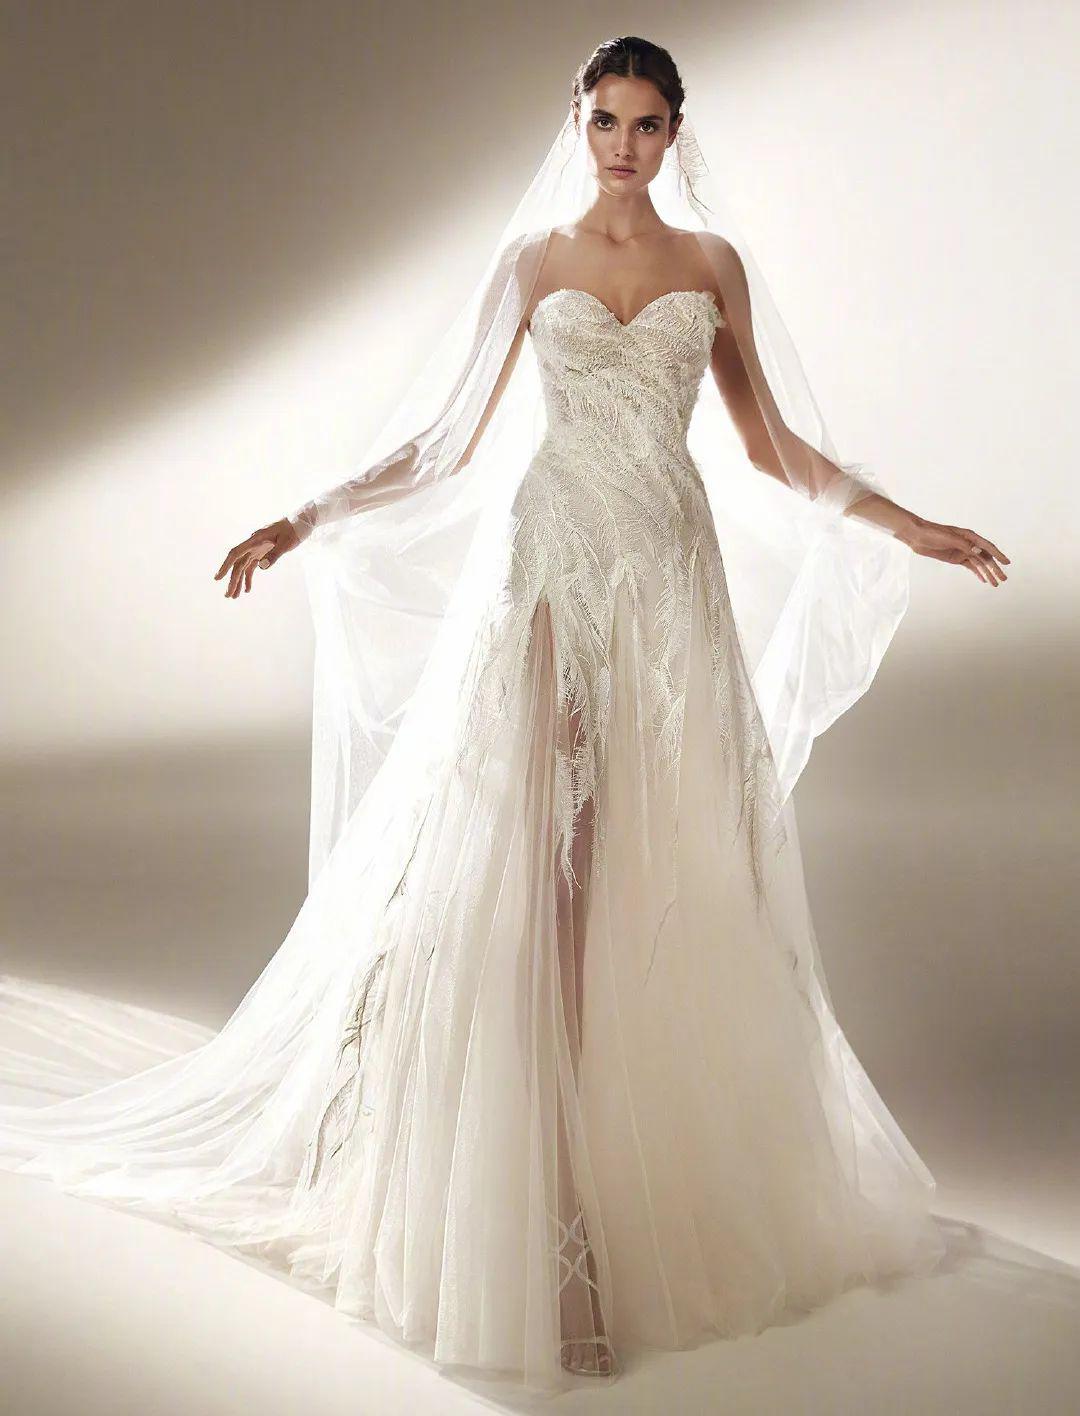 pronovias旗下的高定婚纱丨全手工西班牙打造张弛有度的游走于简约和